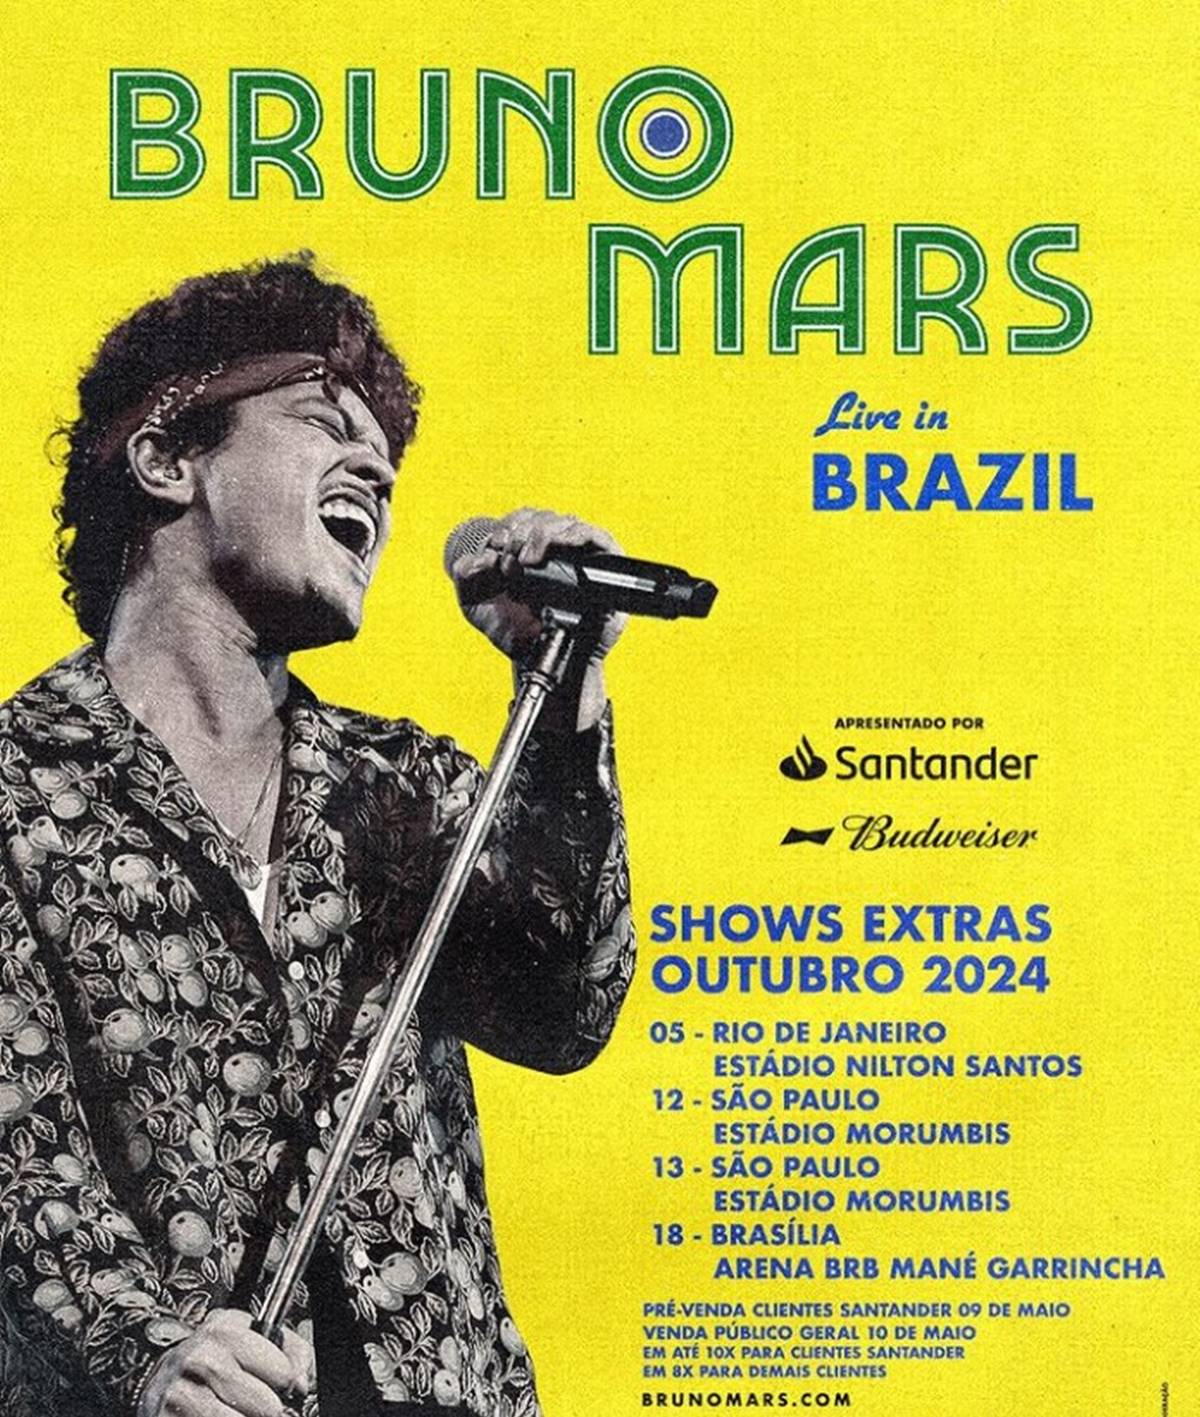 Imagem de Bruno Mars com as datas extas dos show no Brasil em 2024